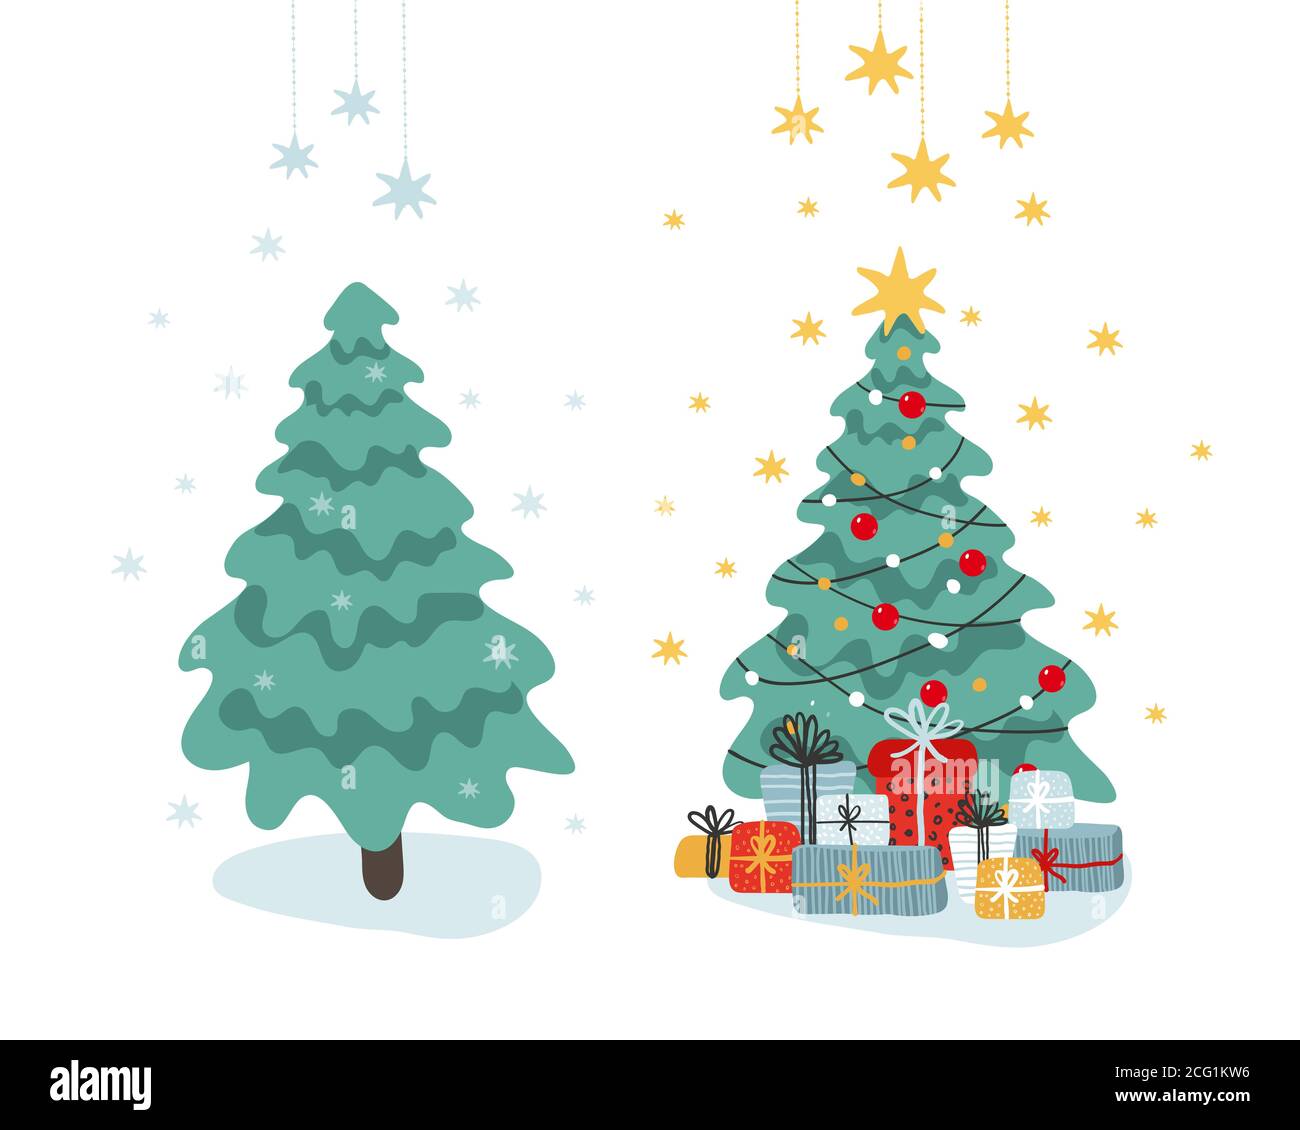 Clip-art para el diseño y año nuevo. Un conjunto de árboles de Navidad en el bosque y decorado con una estrella, guirnaldas y regalos. Ilustración de vector plano. Estilo de dibujos animados aislados sobre fondo blanco Ilustración del Vector